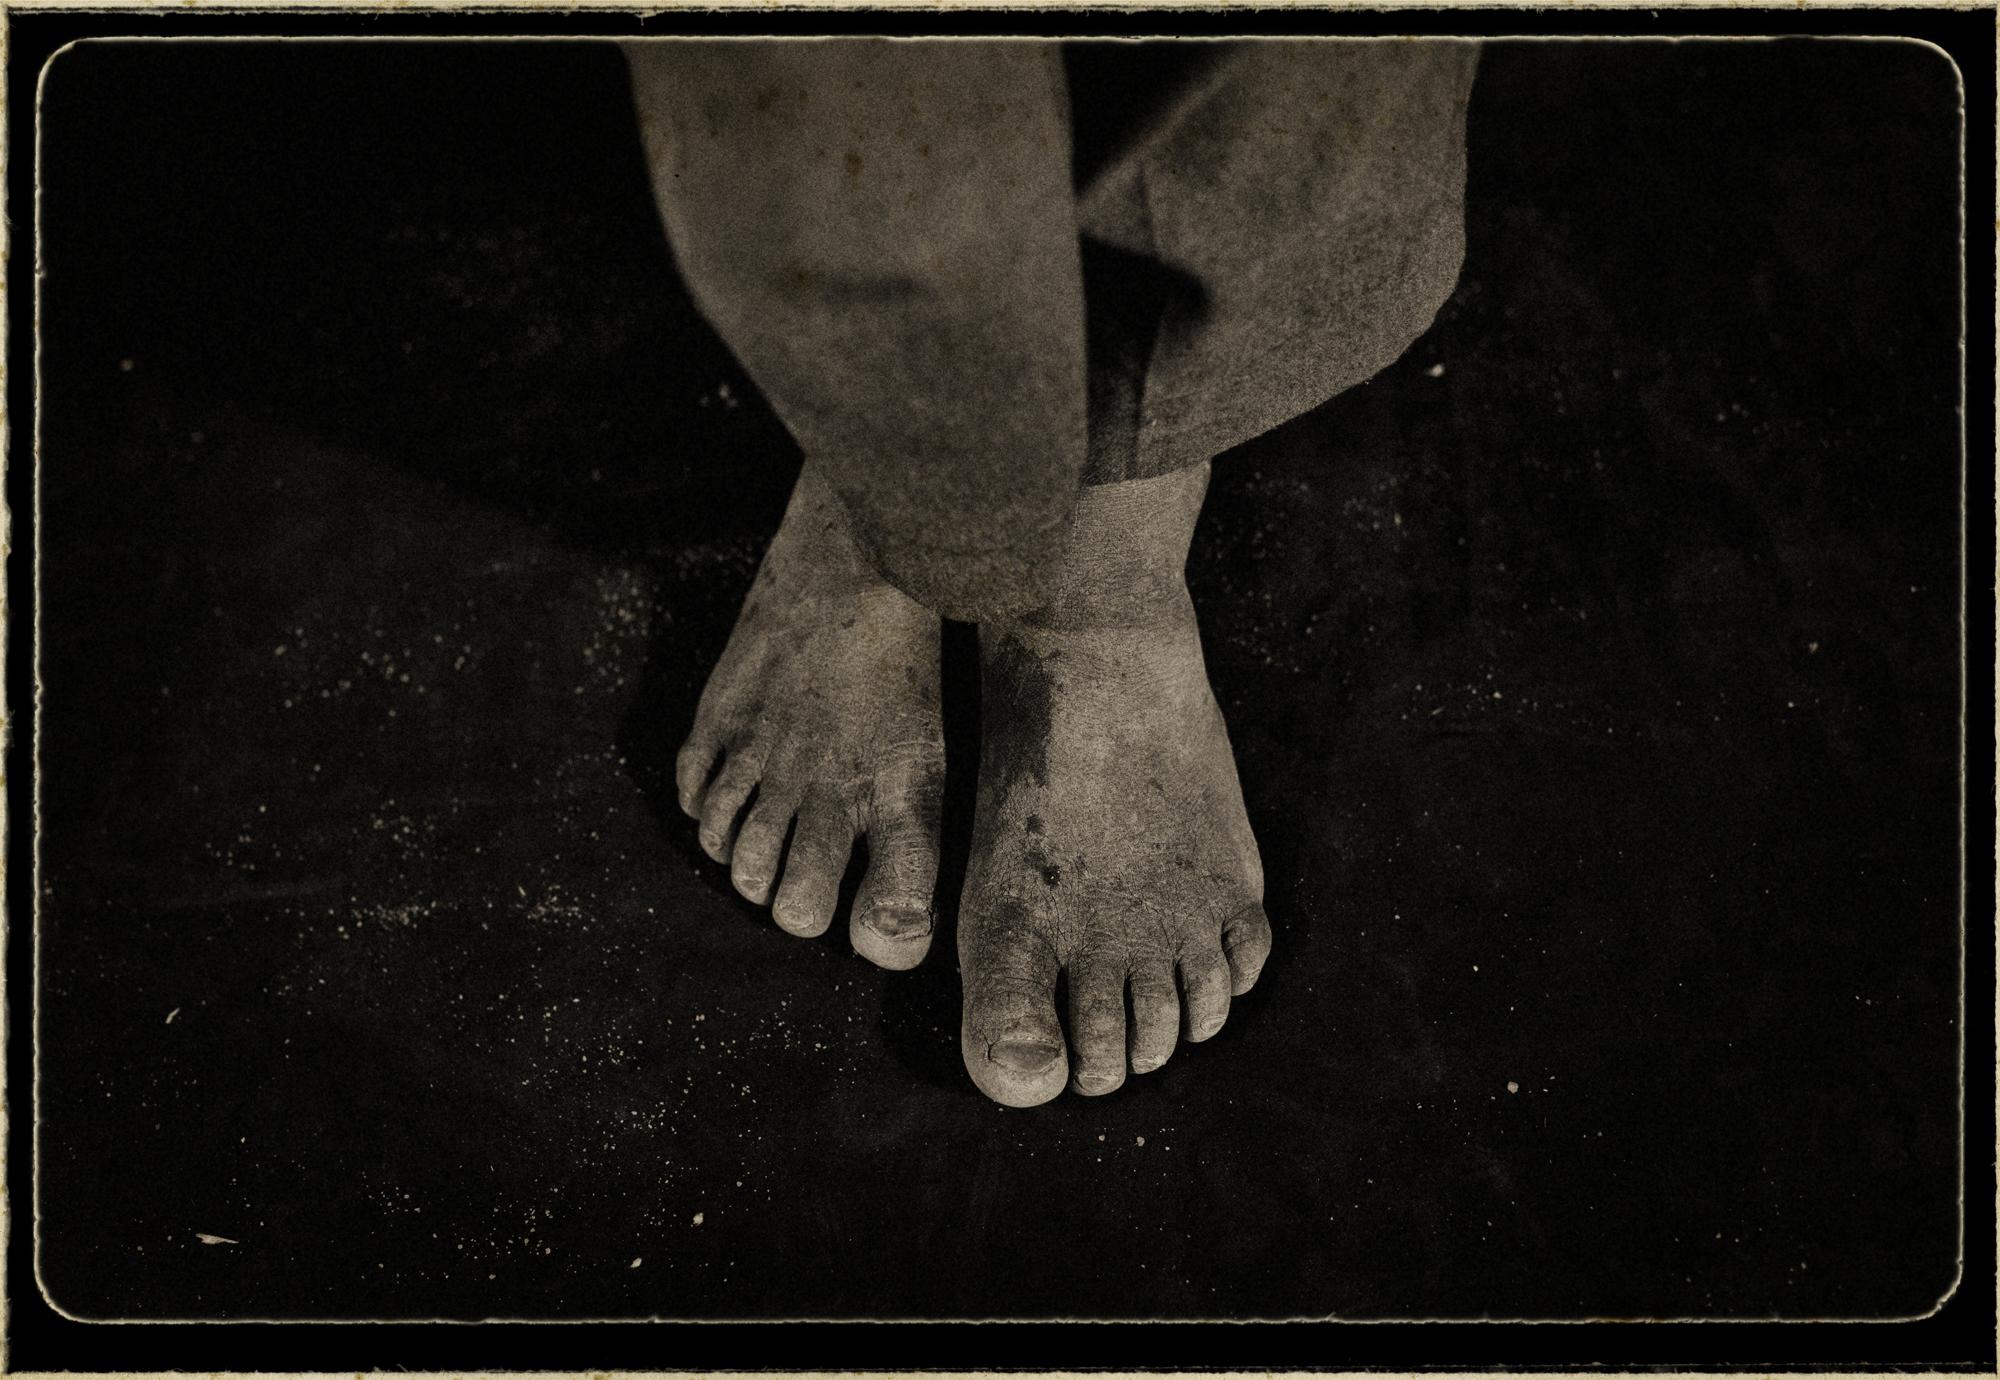 Orphans/ portraits - Hosea, Swaziland.
¨Orphans¨
The feet of an...